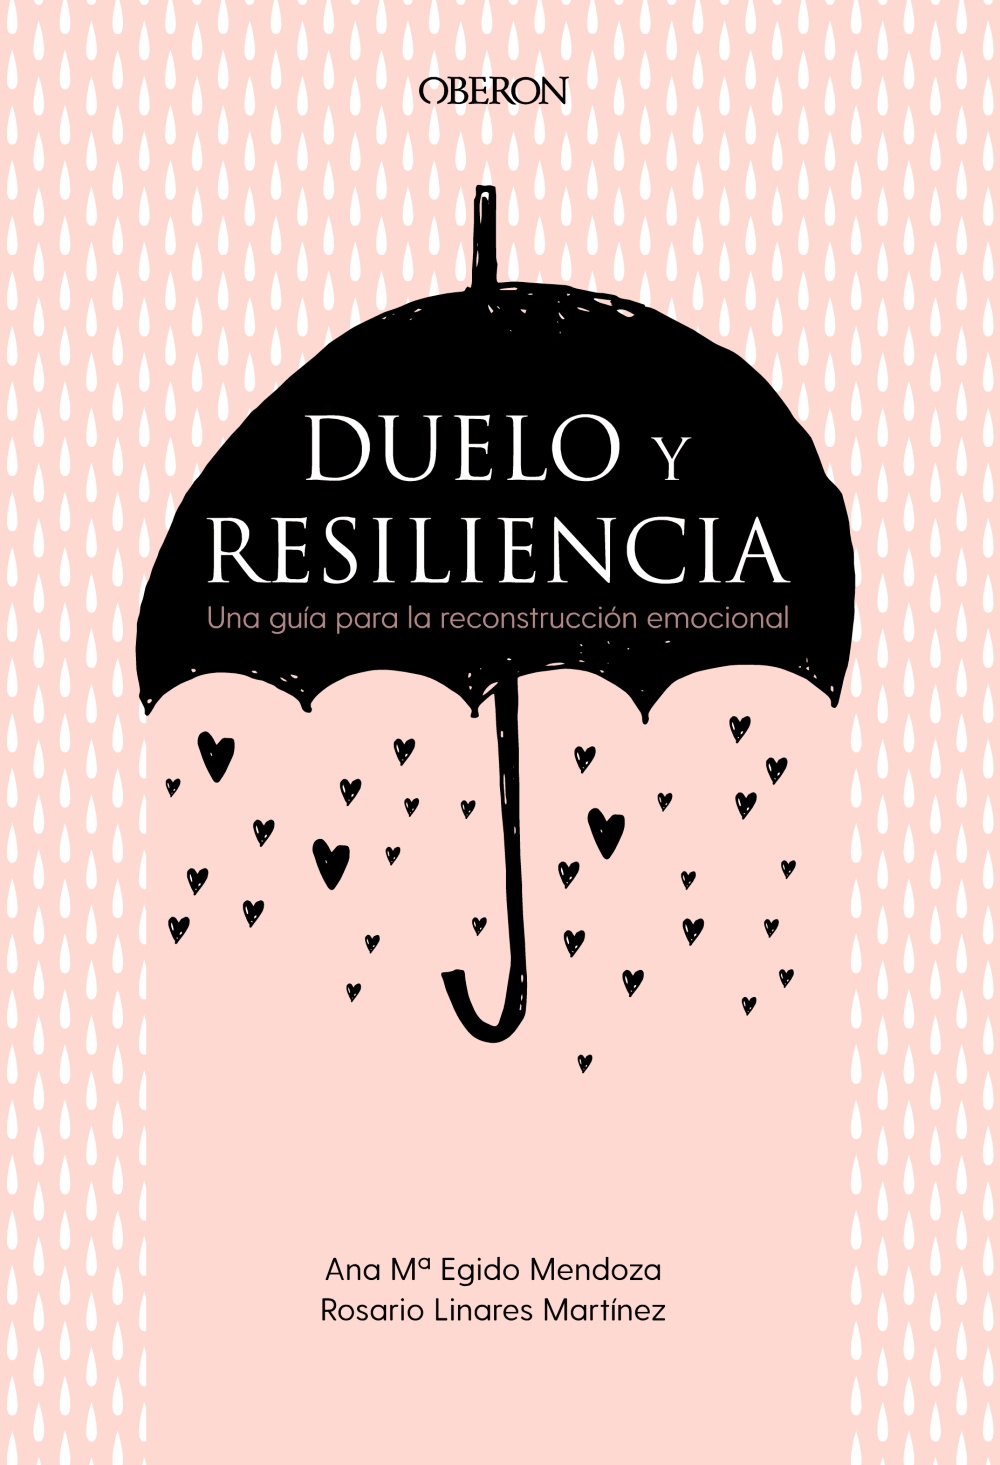 duelo-y-resiliencia-una-guia-para-la-reconstruccion-emocional-978-84-415-4171-9.jpg